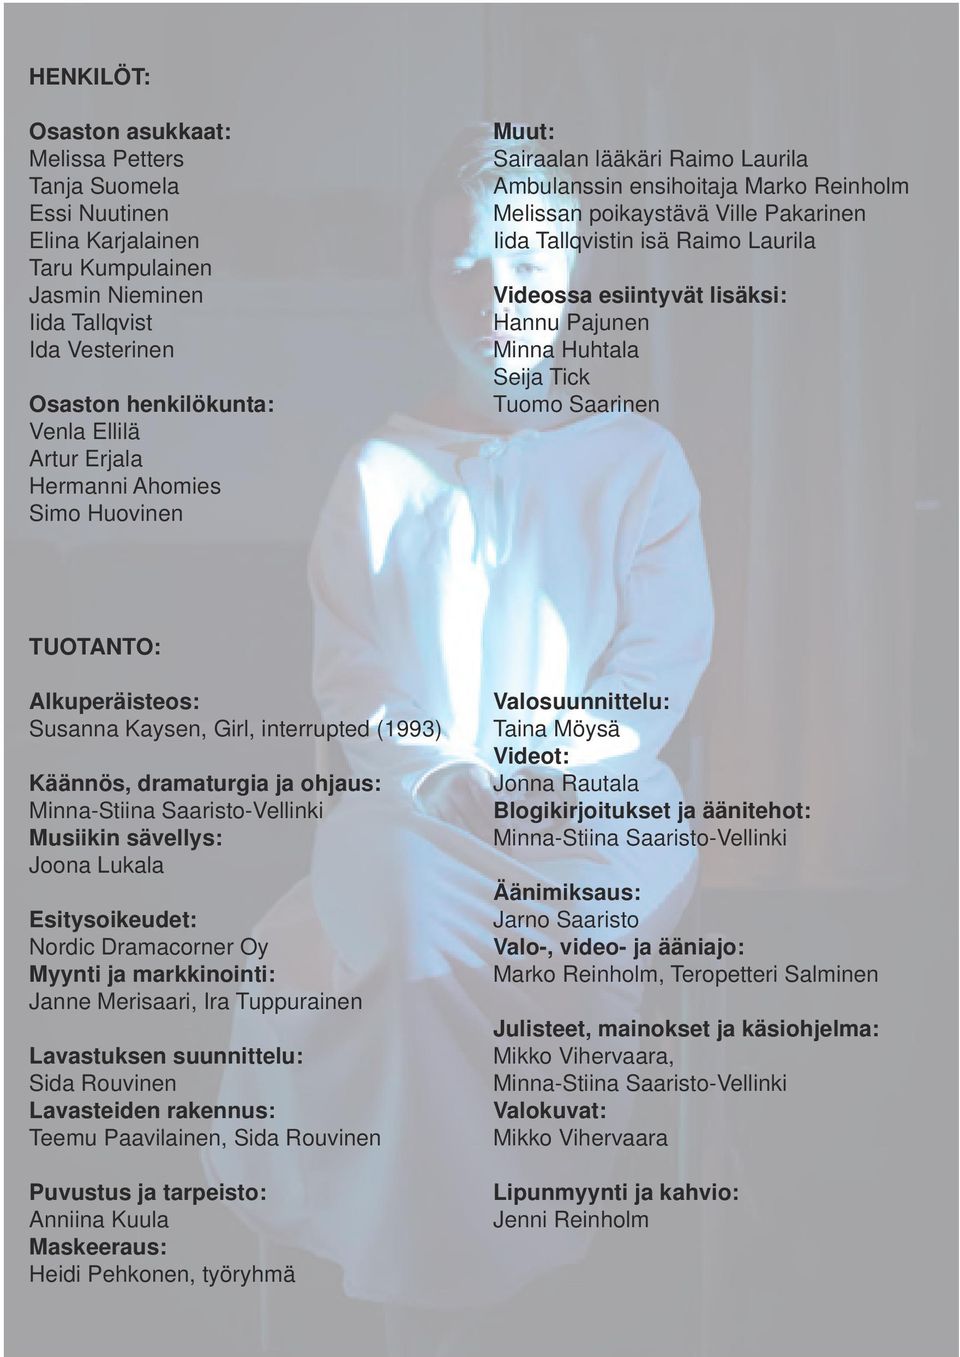 esiintyvät lisäksi: Hannu Pajunen Minna Huhtala Seija Tick Tuomo Saarinen TUOTANTO: Alkuperäisteos: Susanna Kaysen, Girl, interrupted (1993) Käännös, dramaturgia ja ohjaus: Minna-Stiina